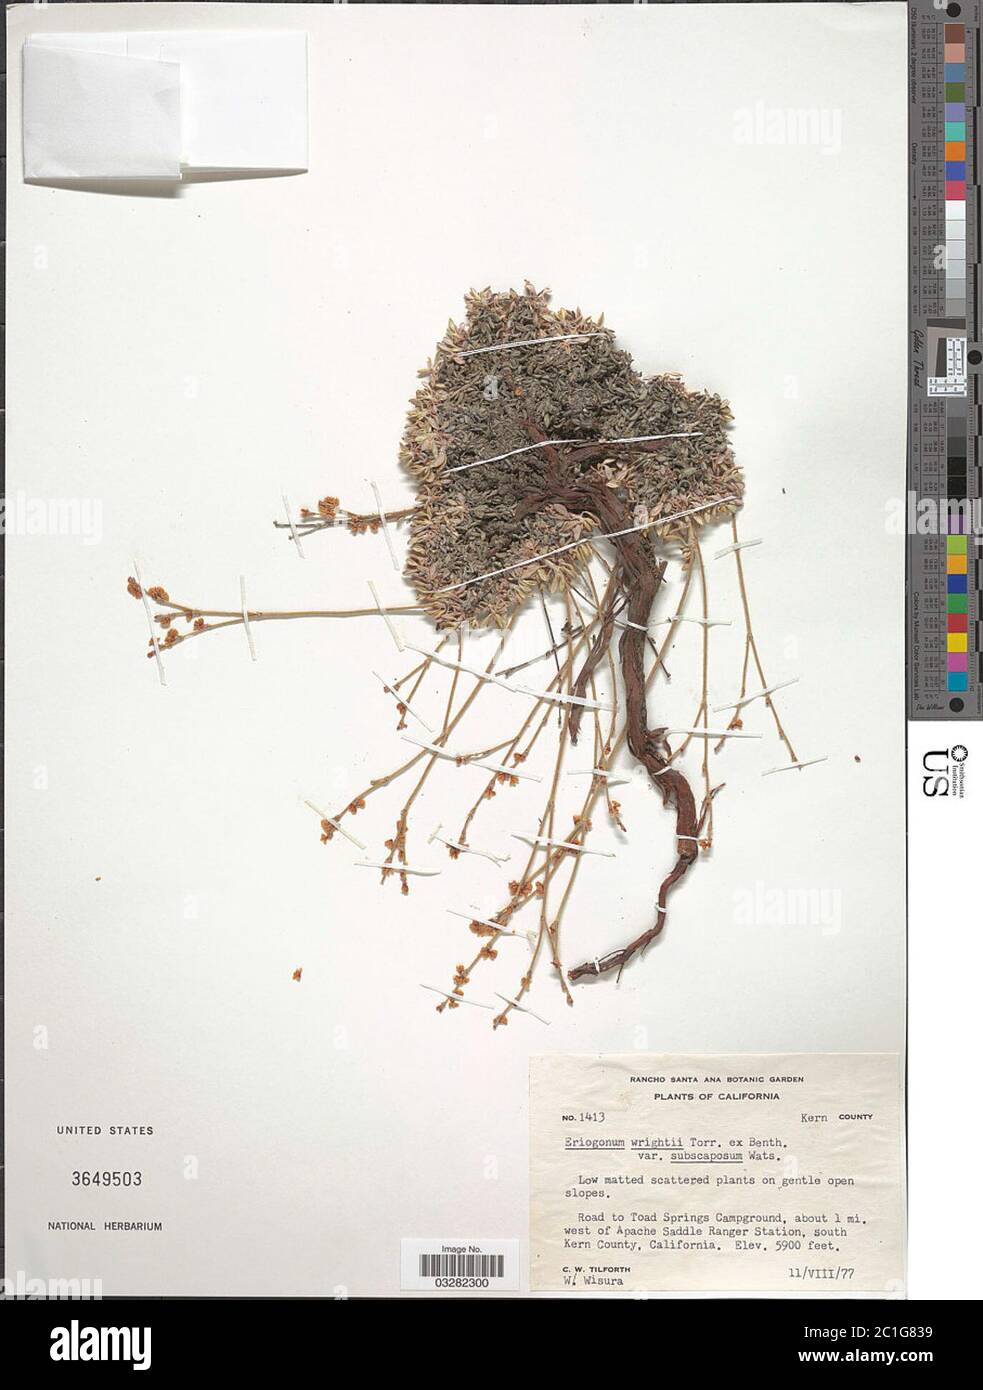 Eriogonum wrightii var subscaposum S Watson Eriogonum wrightii var subscaposum S Watson. Stock Photo